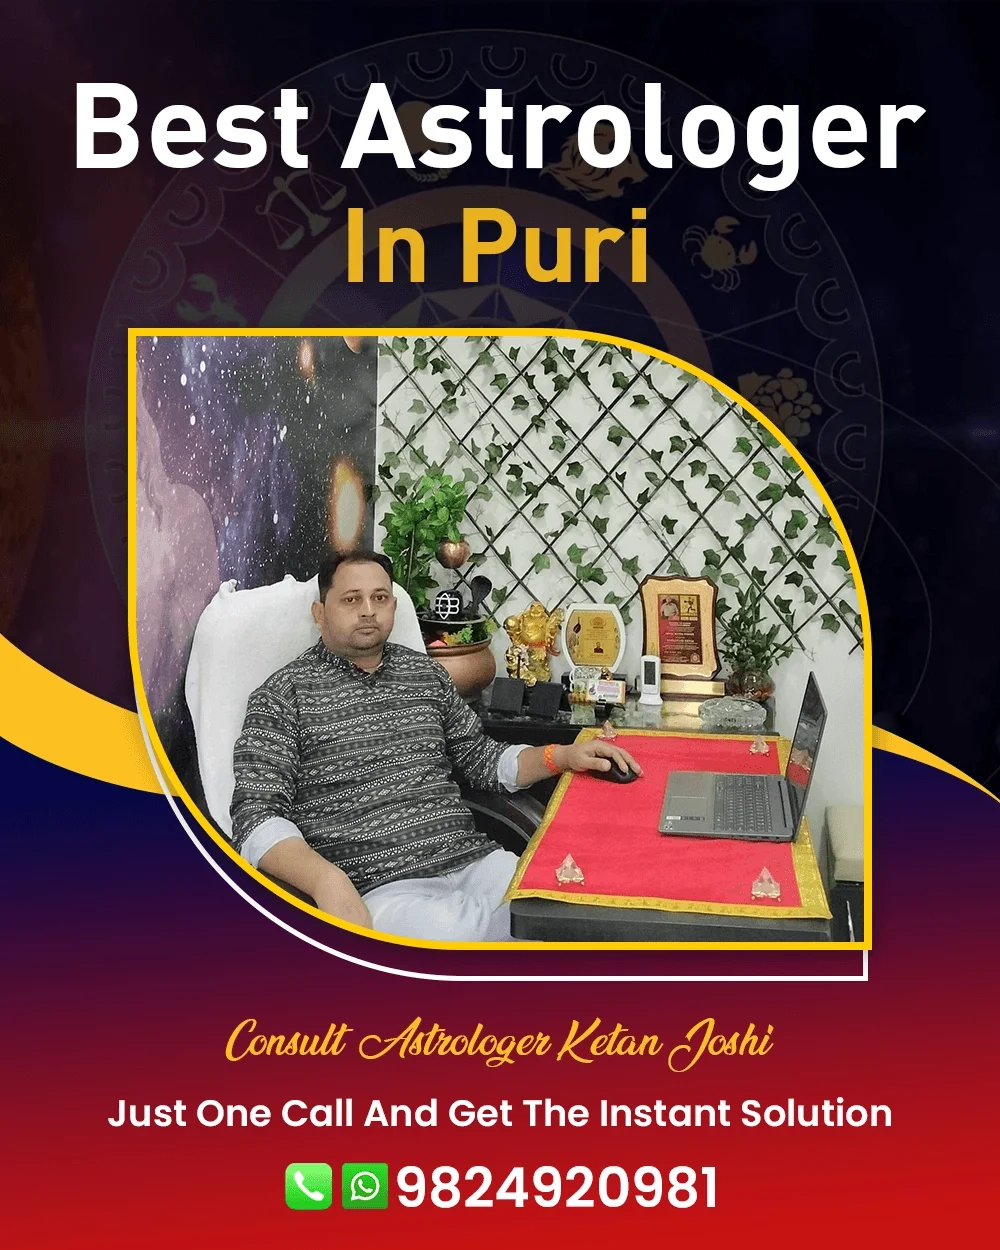 Best Astrologer In Puri